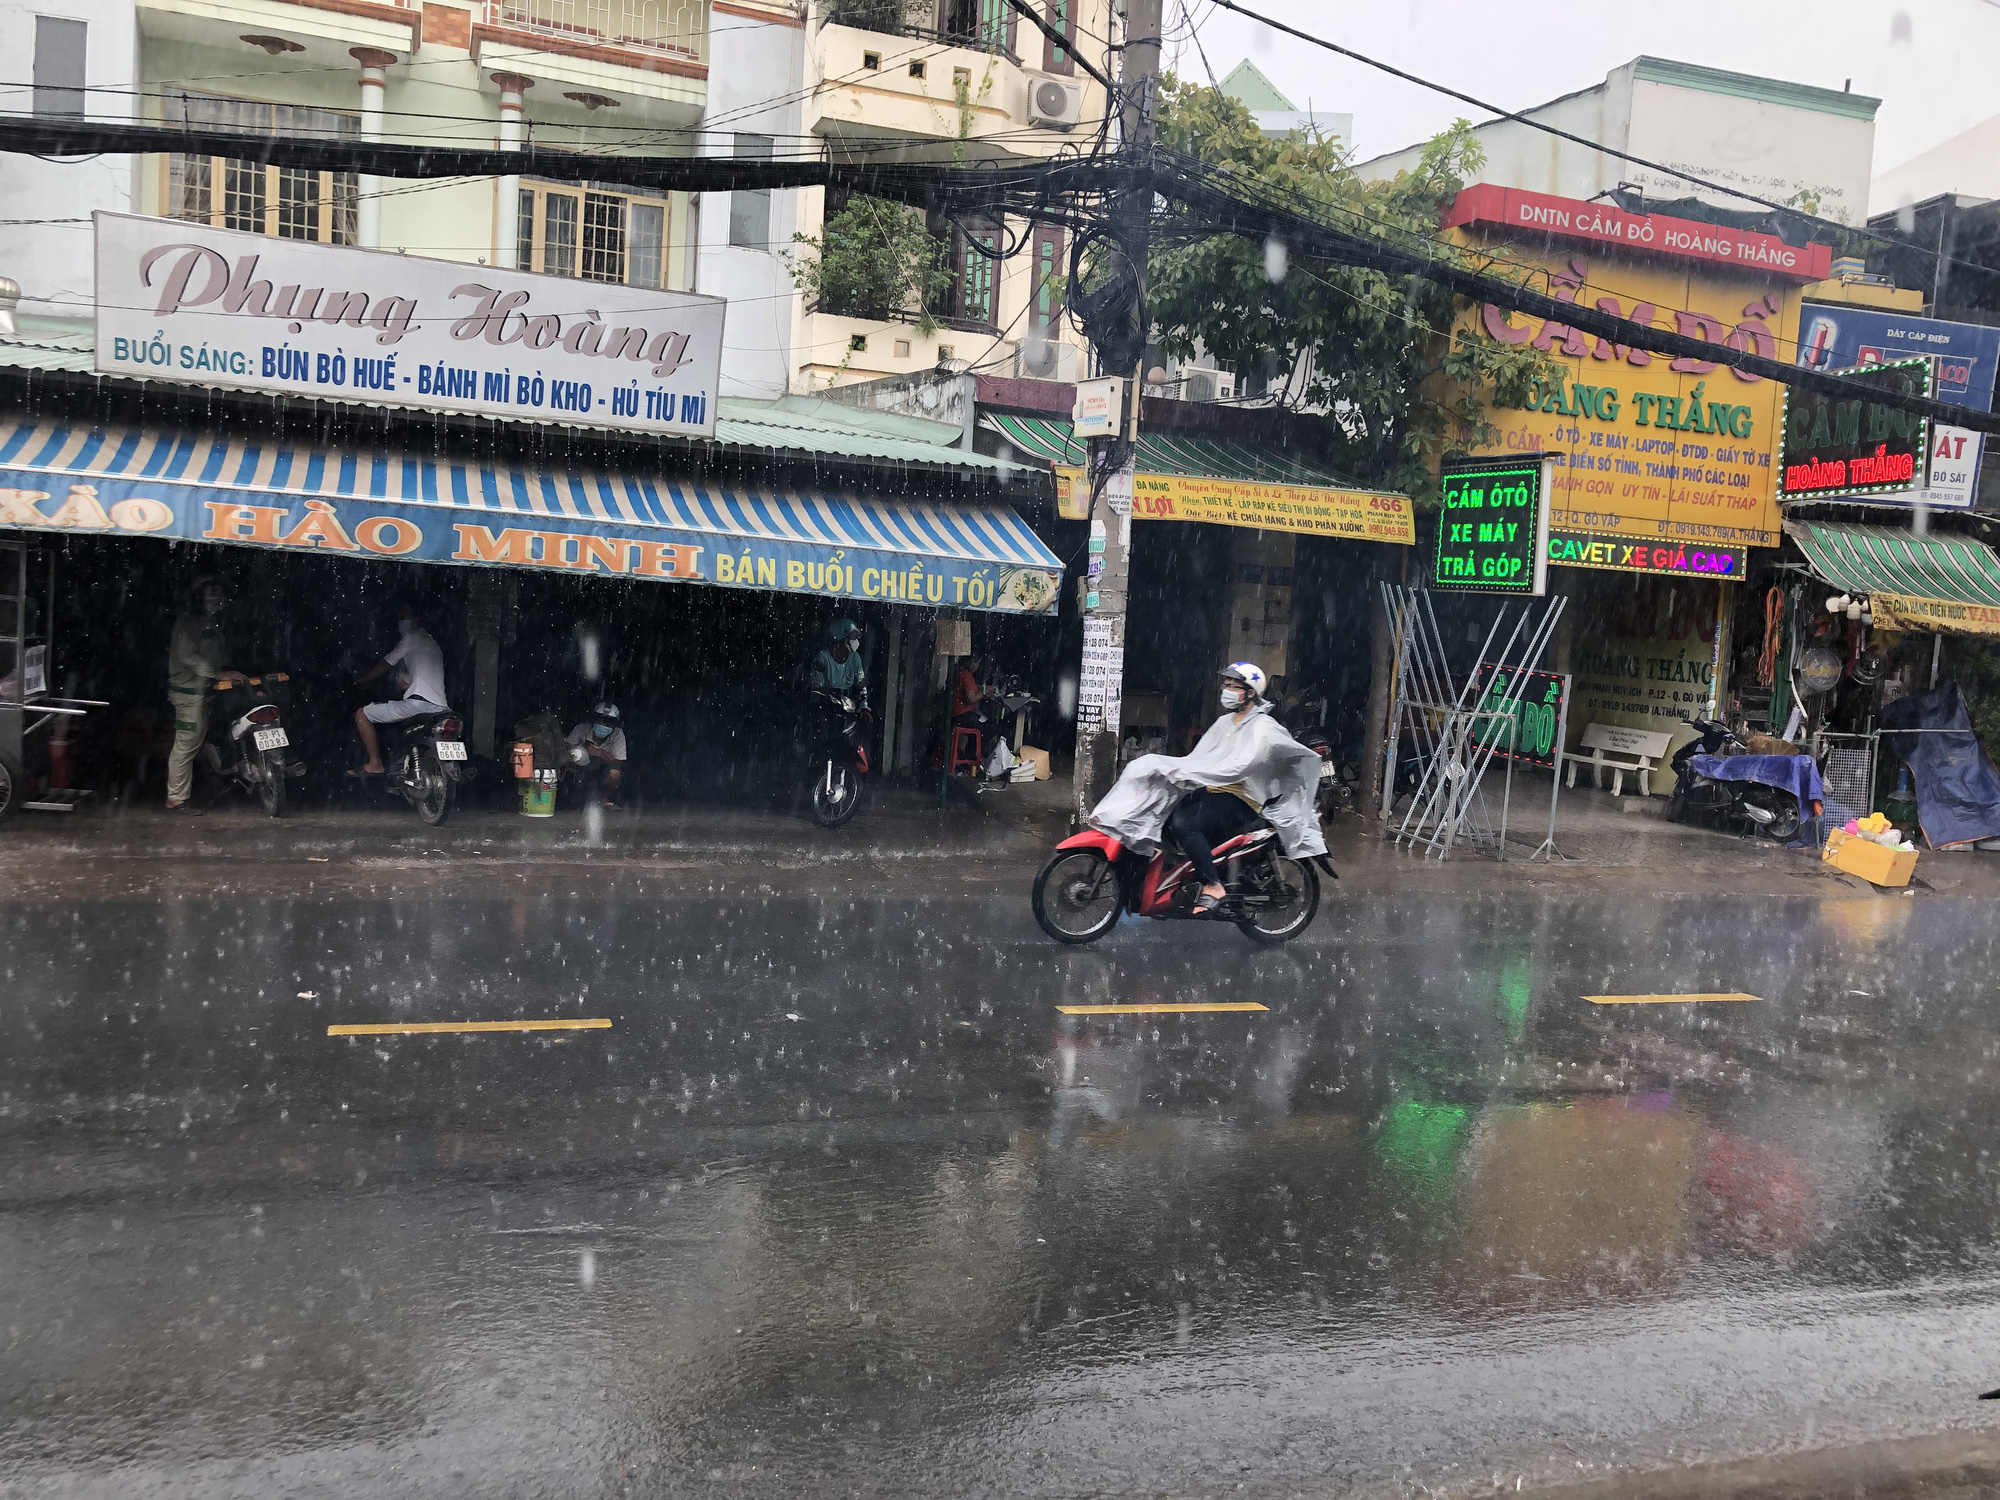 Nhiều đường ở TP HCM ngập nước, cảnh báo mưa giông tại các quận trung tâm - Ảnh 1.